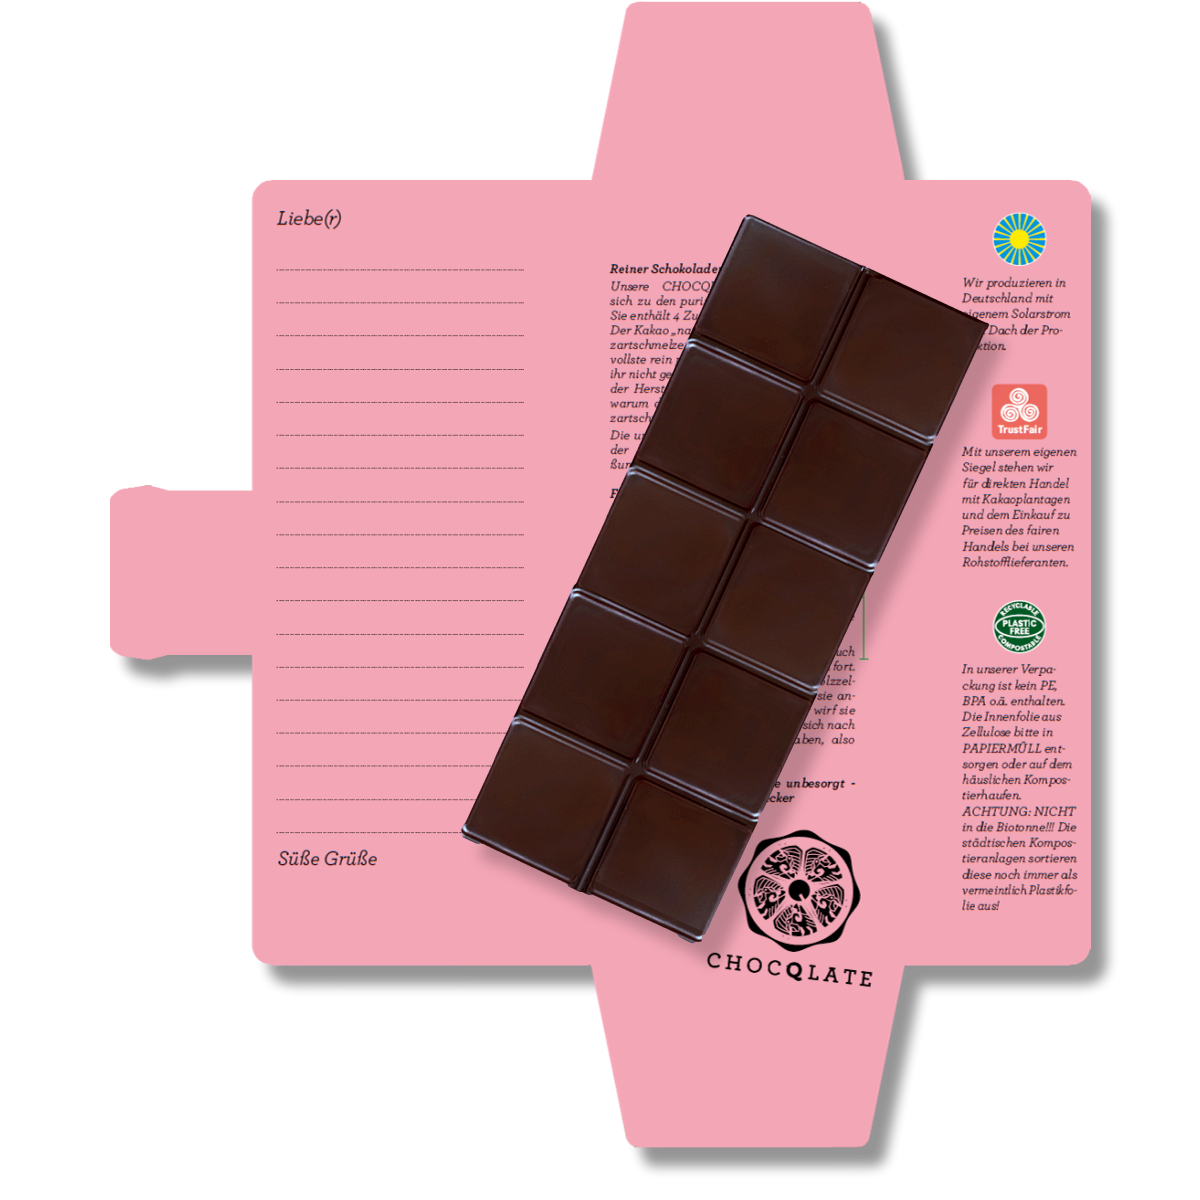 Chocolate orgánico SweetGreets con tarjeta de felicitación "Bésame y me derretiré"